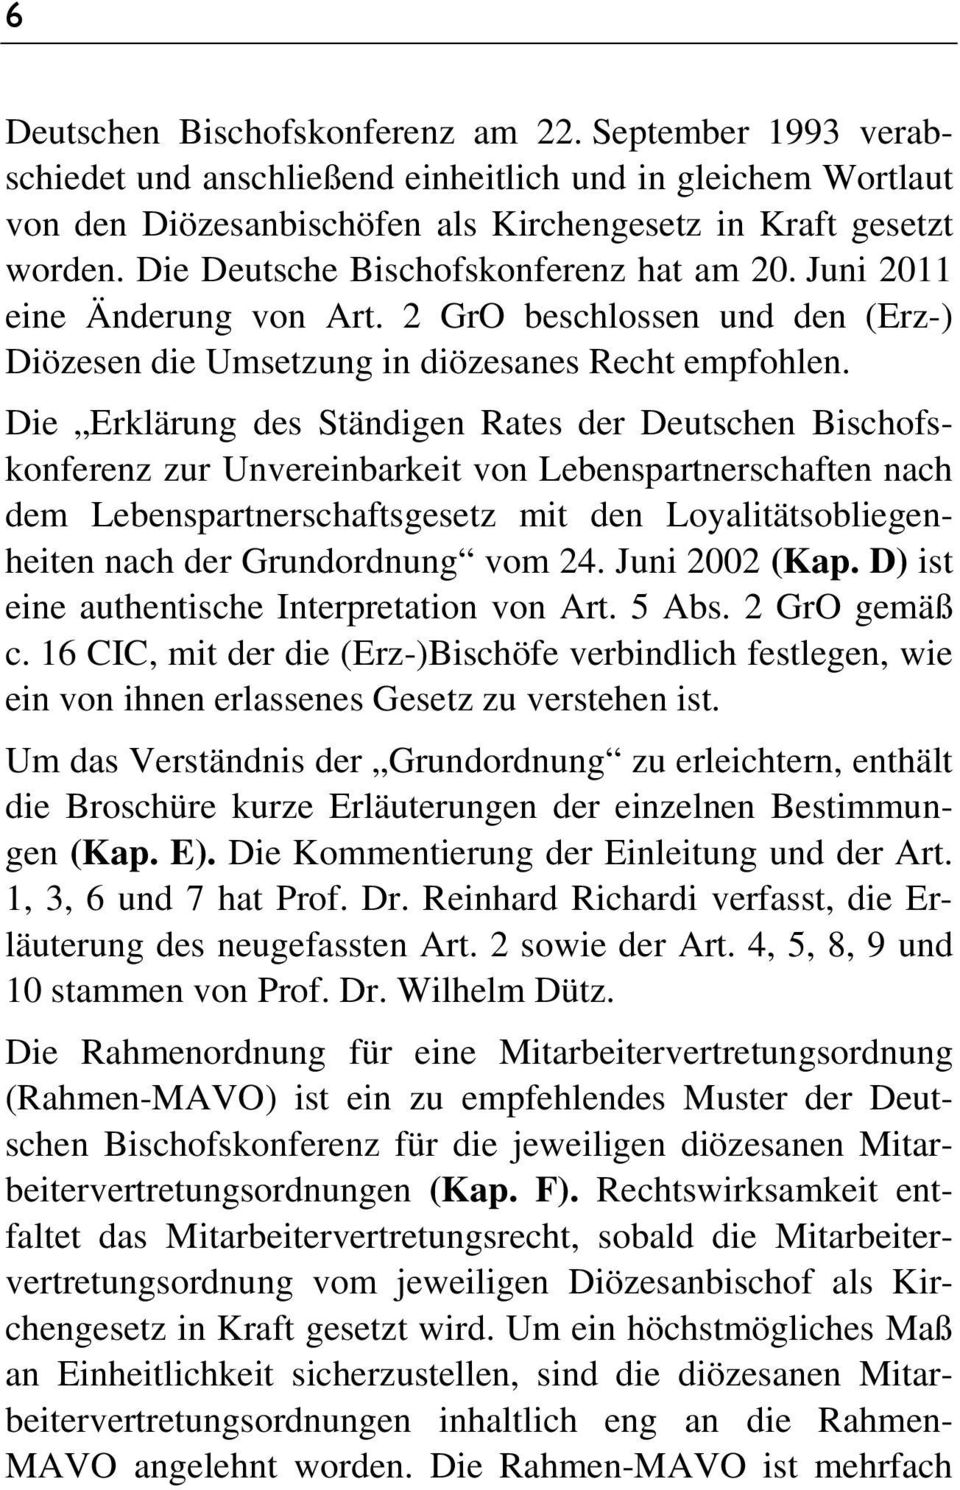 Die Erklärung des Ständigen Rates der Deutschen Bischofskonferenz zur Unvereinbarkeit von Lebenspartnerschaften nach dem Lebenspartnerschaftsgesetz mit den Loyalitätsobliegenheiten nach der